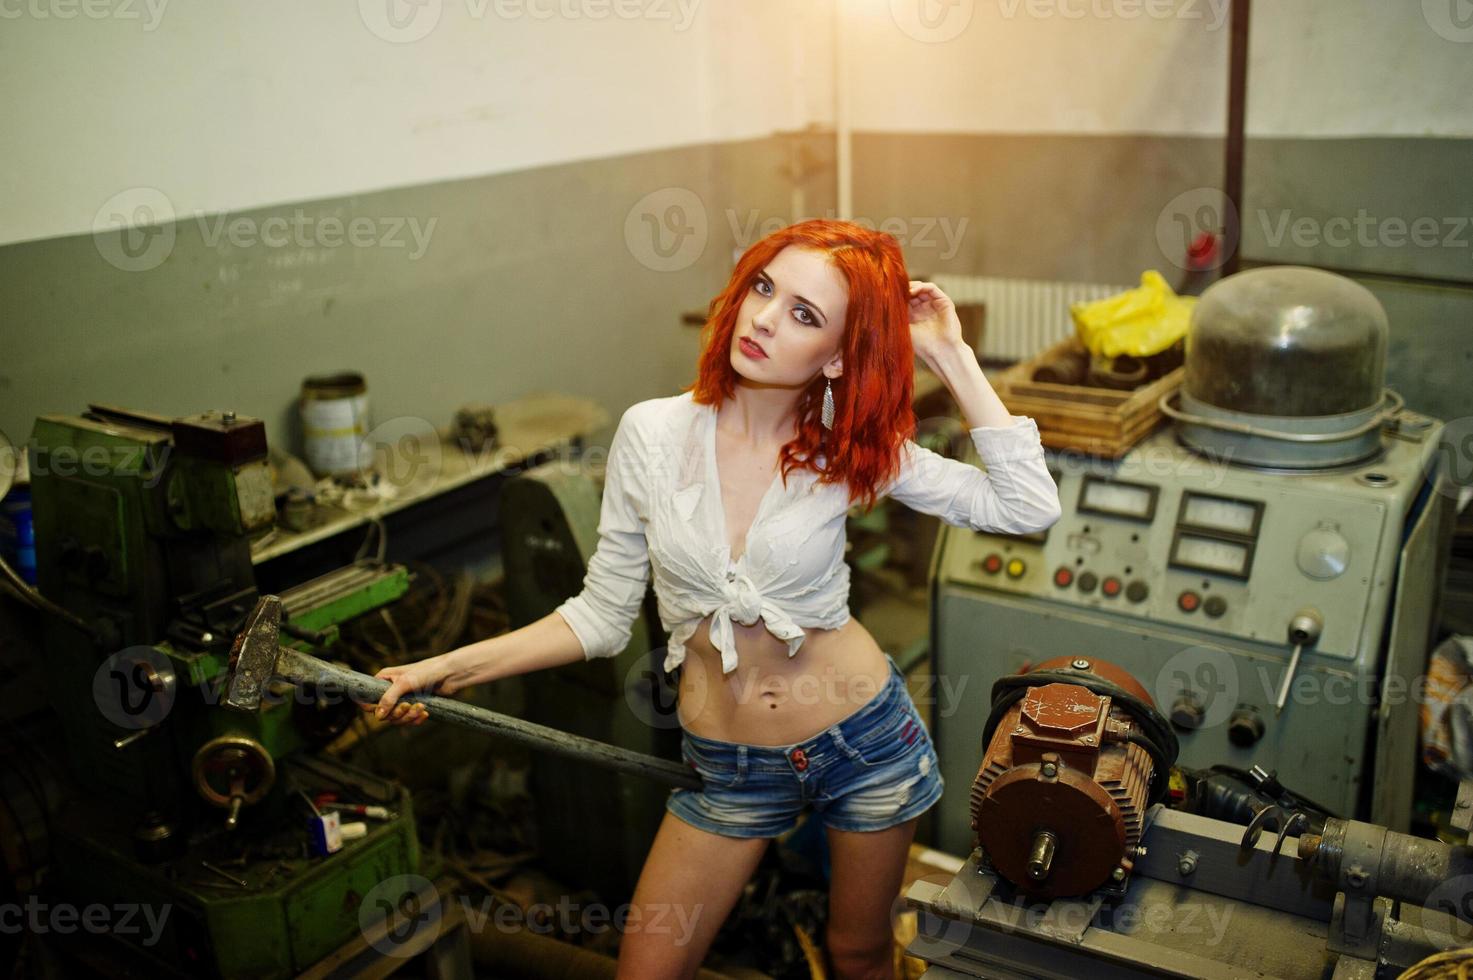 la chica de cabello rojo usa pantalones cortos de mezclilla y blusa blanca con un martillo en las manos posado en una máquina industrial en la fábrica. foto